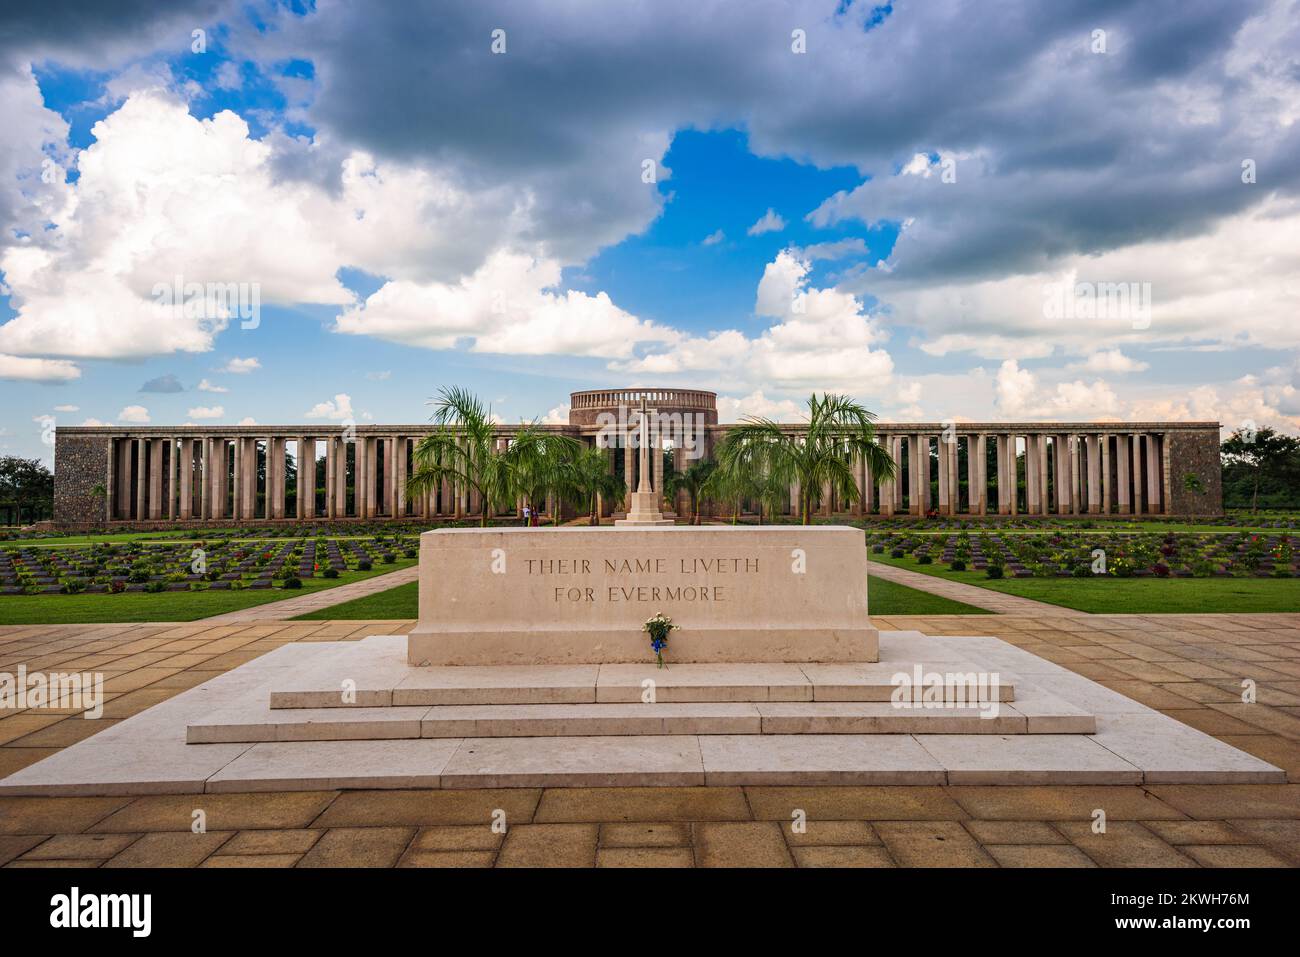 TAUKKYAN, MYANMAR - 20 OCTOBRE 2015 : cimetière de guerre de Taukkyan dédié aux pertes alliées pendant la Seconde Guerre mondiale. Banque D'Images